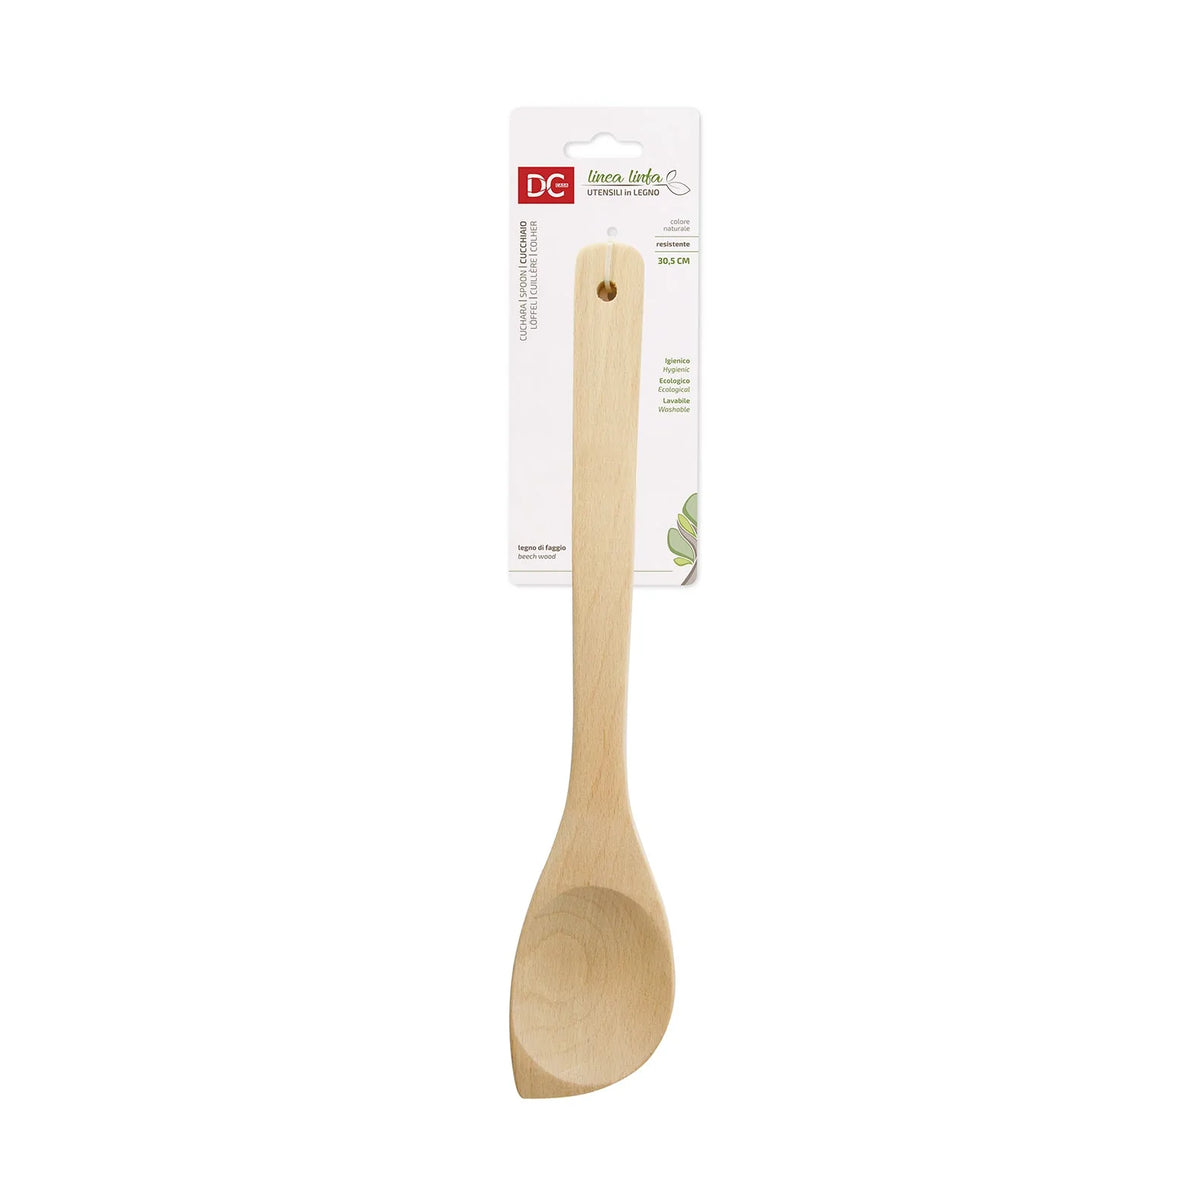 Beech wood spoon - 30.5cm